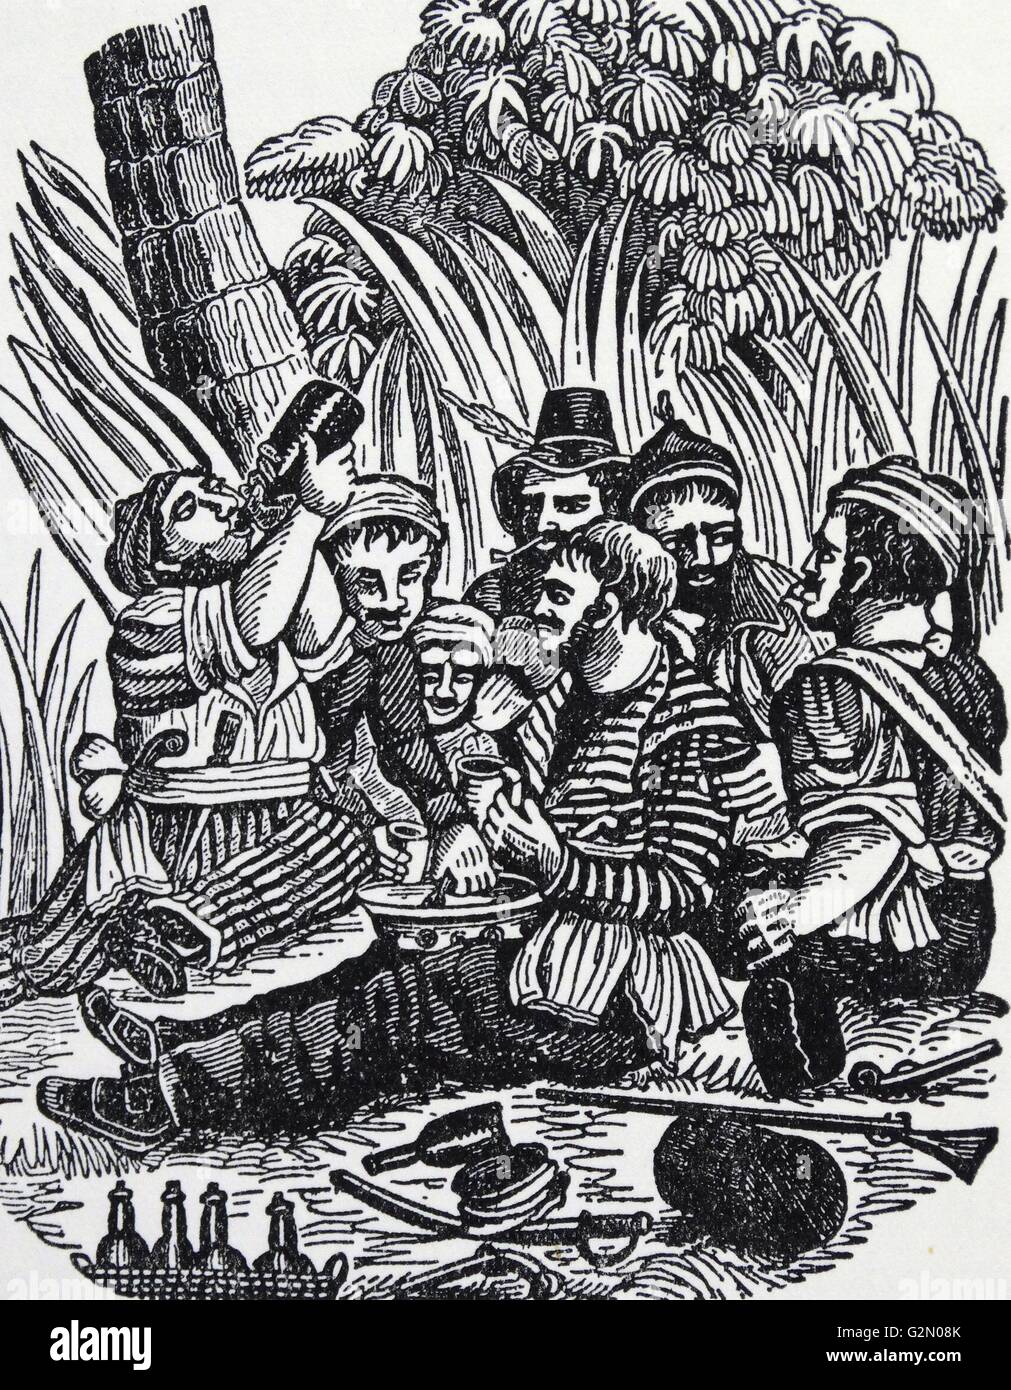 Bartholomew Roberts (17. Mai 1682 - vom 10. Februar 1722), geboren John Roberts, war ein Waliser Piraten, Schiffe aus Nord- und Westafrika zwischen 1719 und 1722 durchsucht. Bartholomew Roberts' Mannschaft am Calabar River Trinkgelagen. Die meisten der Crew waren betrunken, als die Schwalbe erschienen. Stockfoto